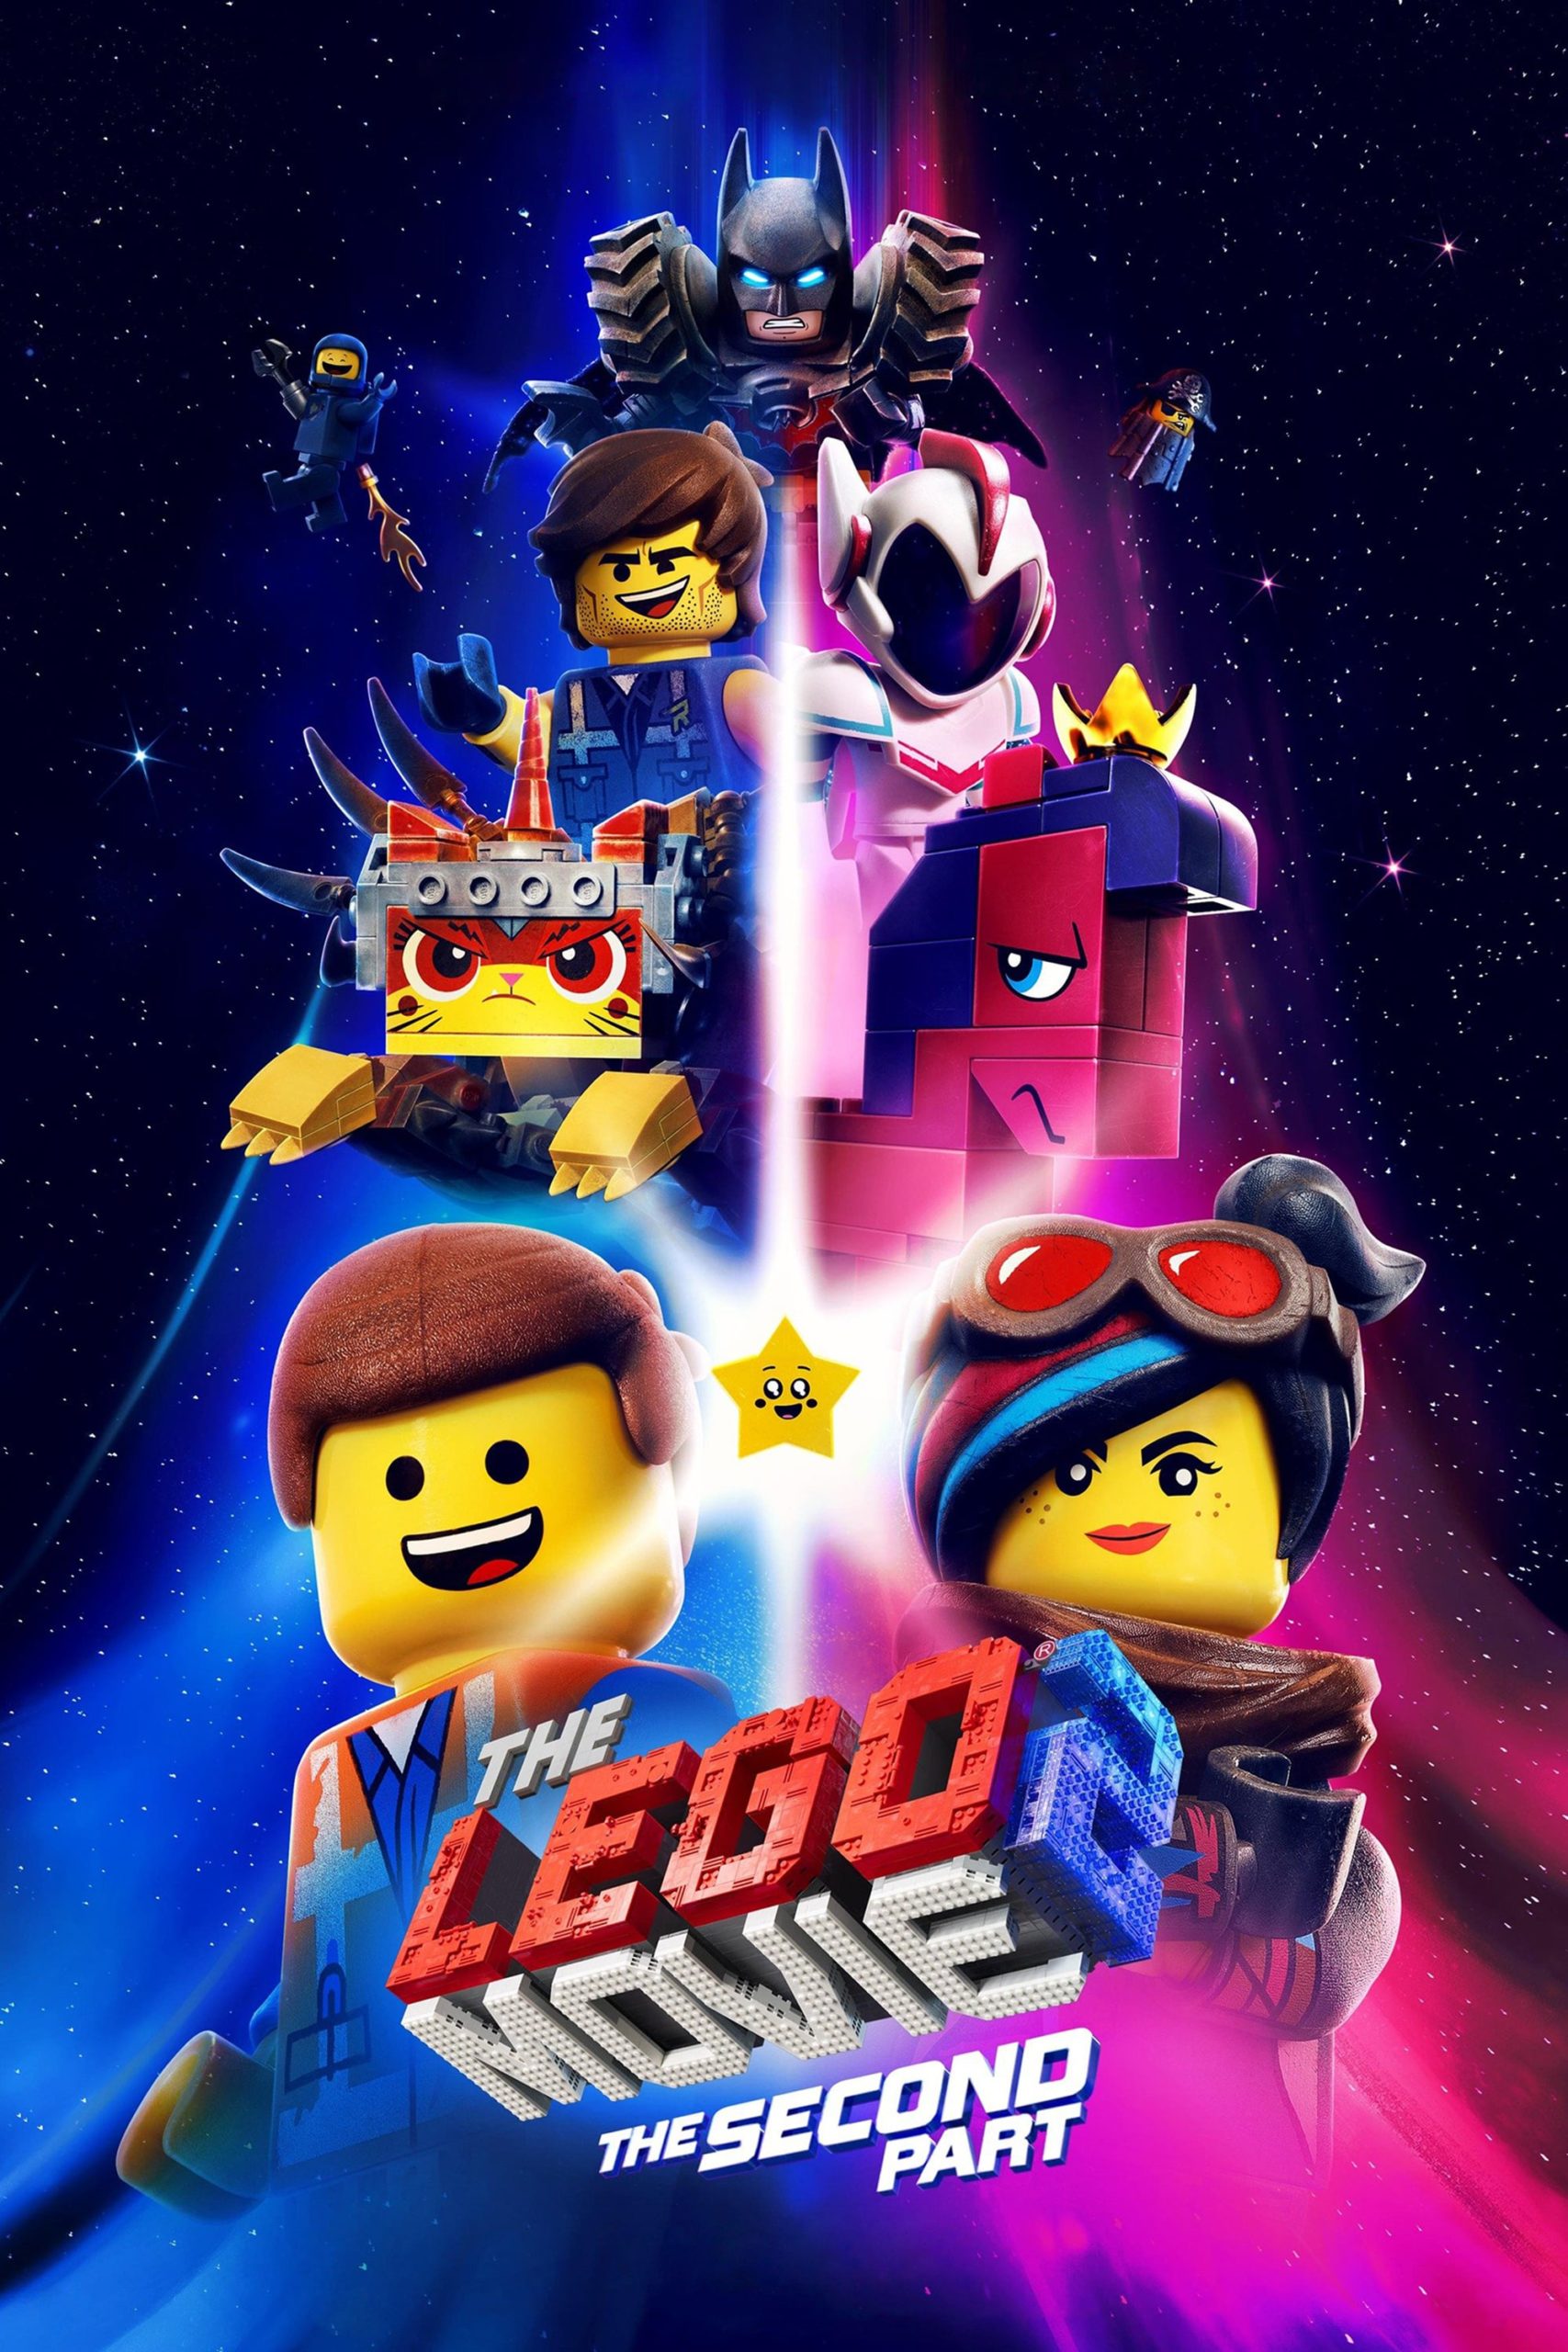 ดูหนังออนไลน์ฟรี ดูหนังใหม่ The Lego Movie 2: The Second Part (2019) เดอะเลโก้มูฟวี่ 2